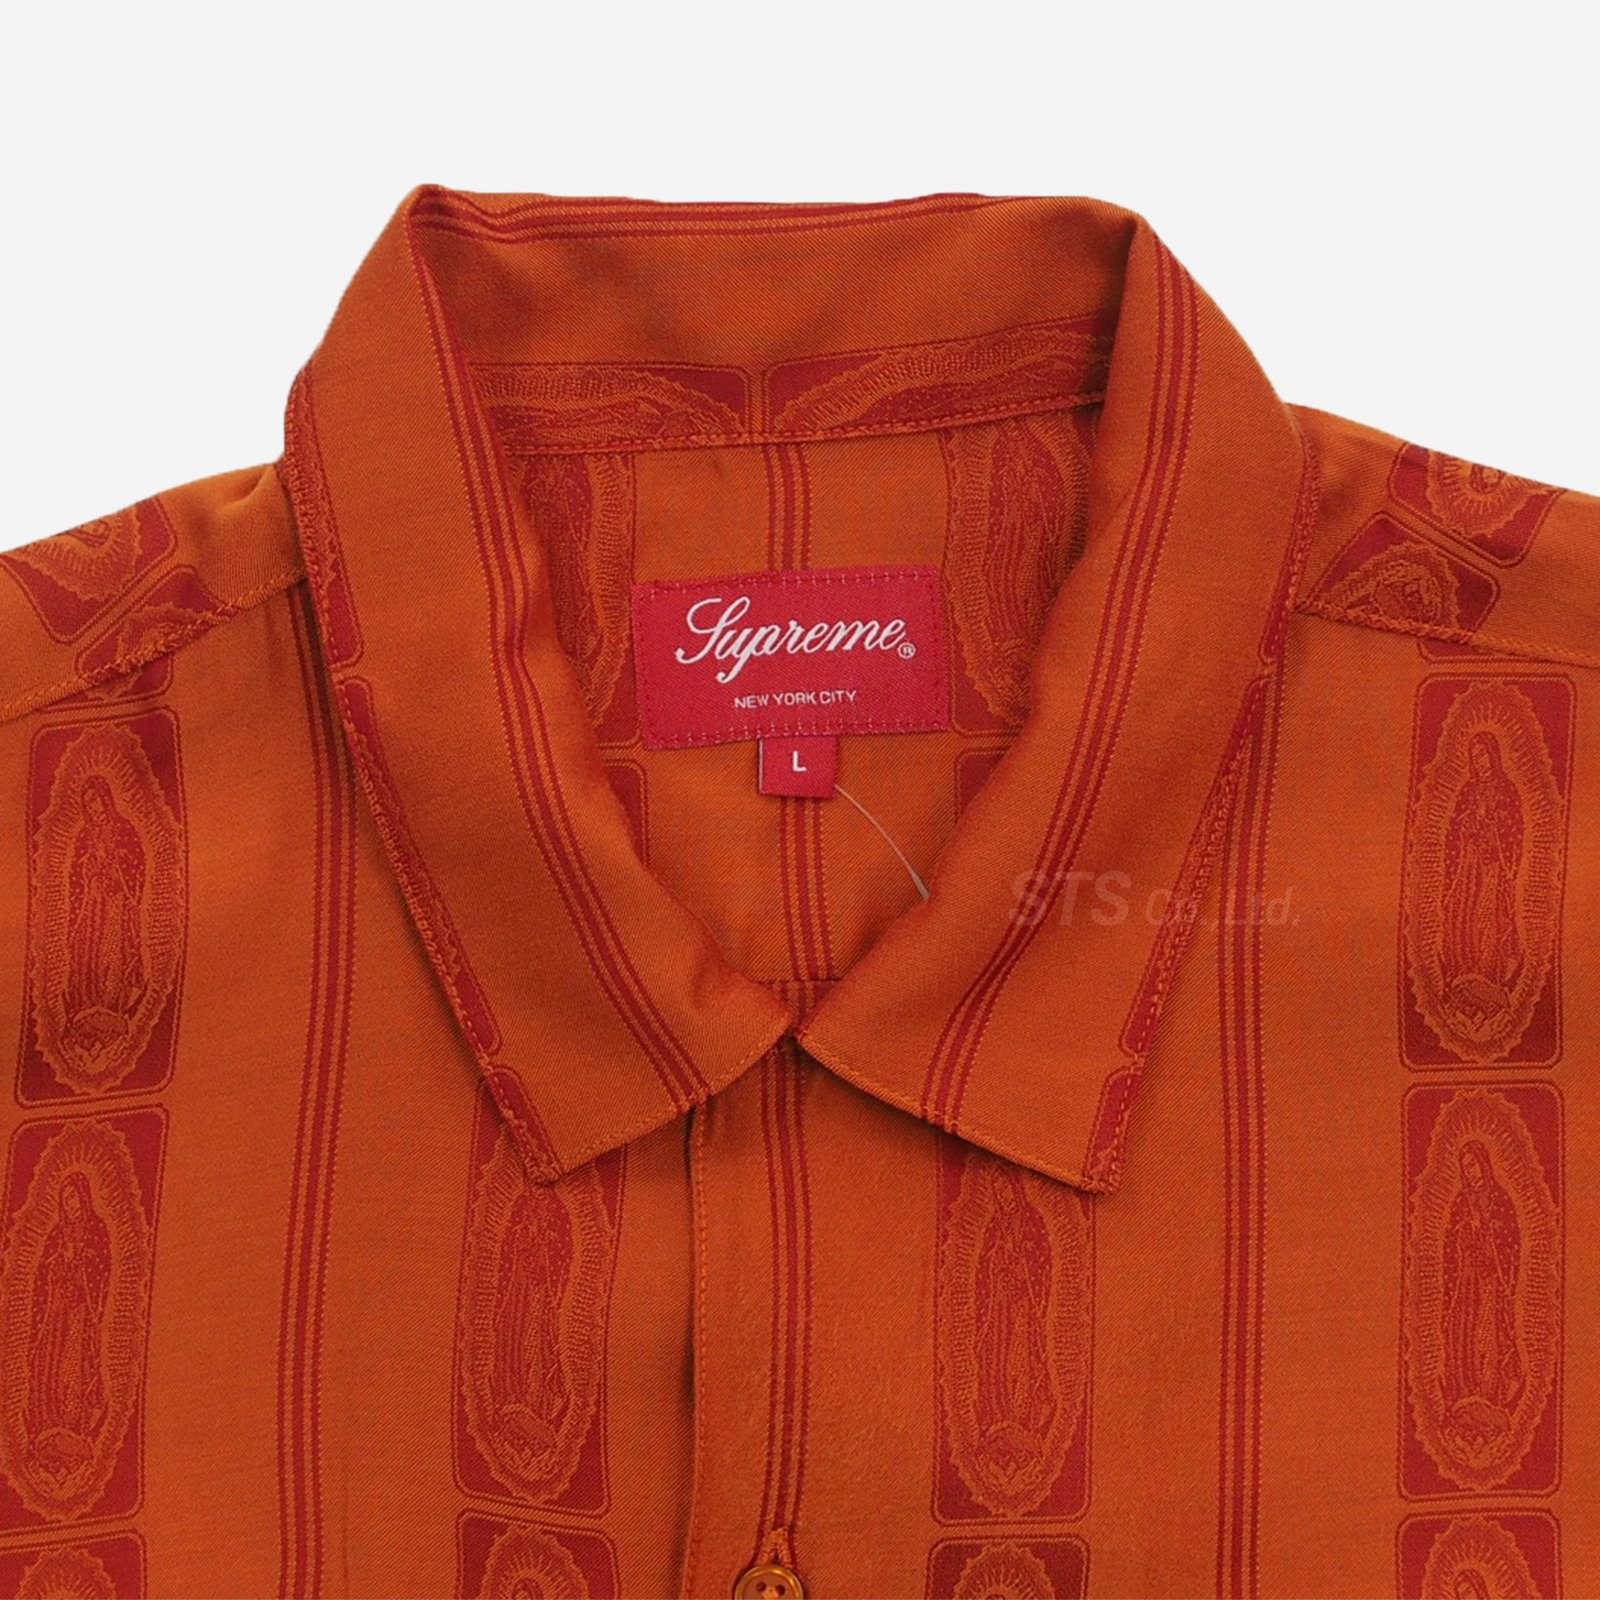 Supreme - Guadalupe S/S Shirt - UG.SHAFT